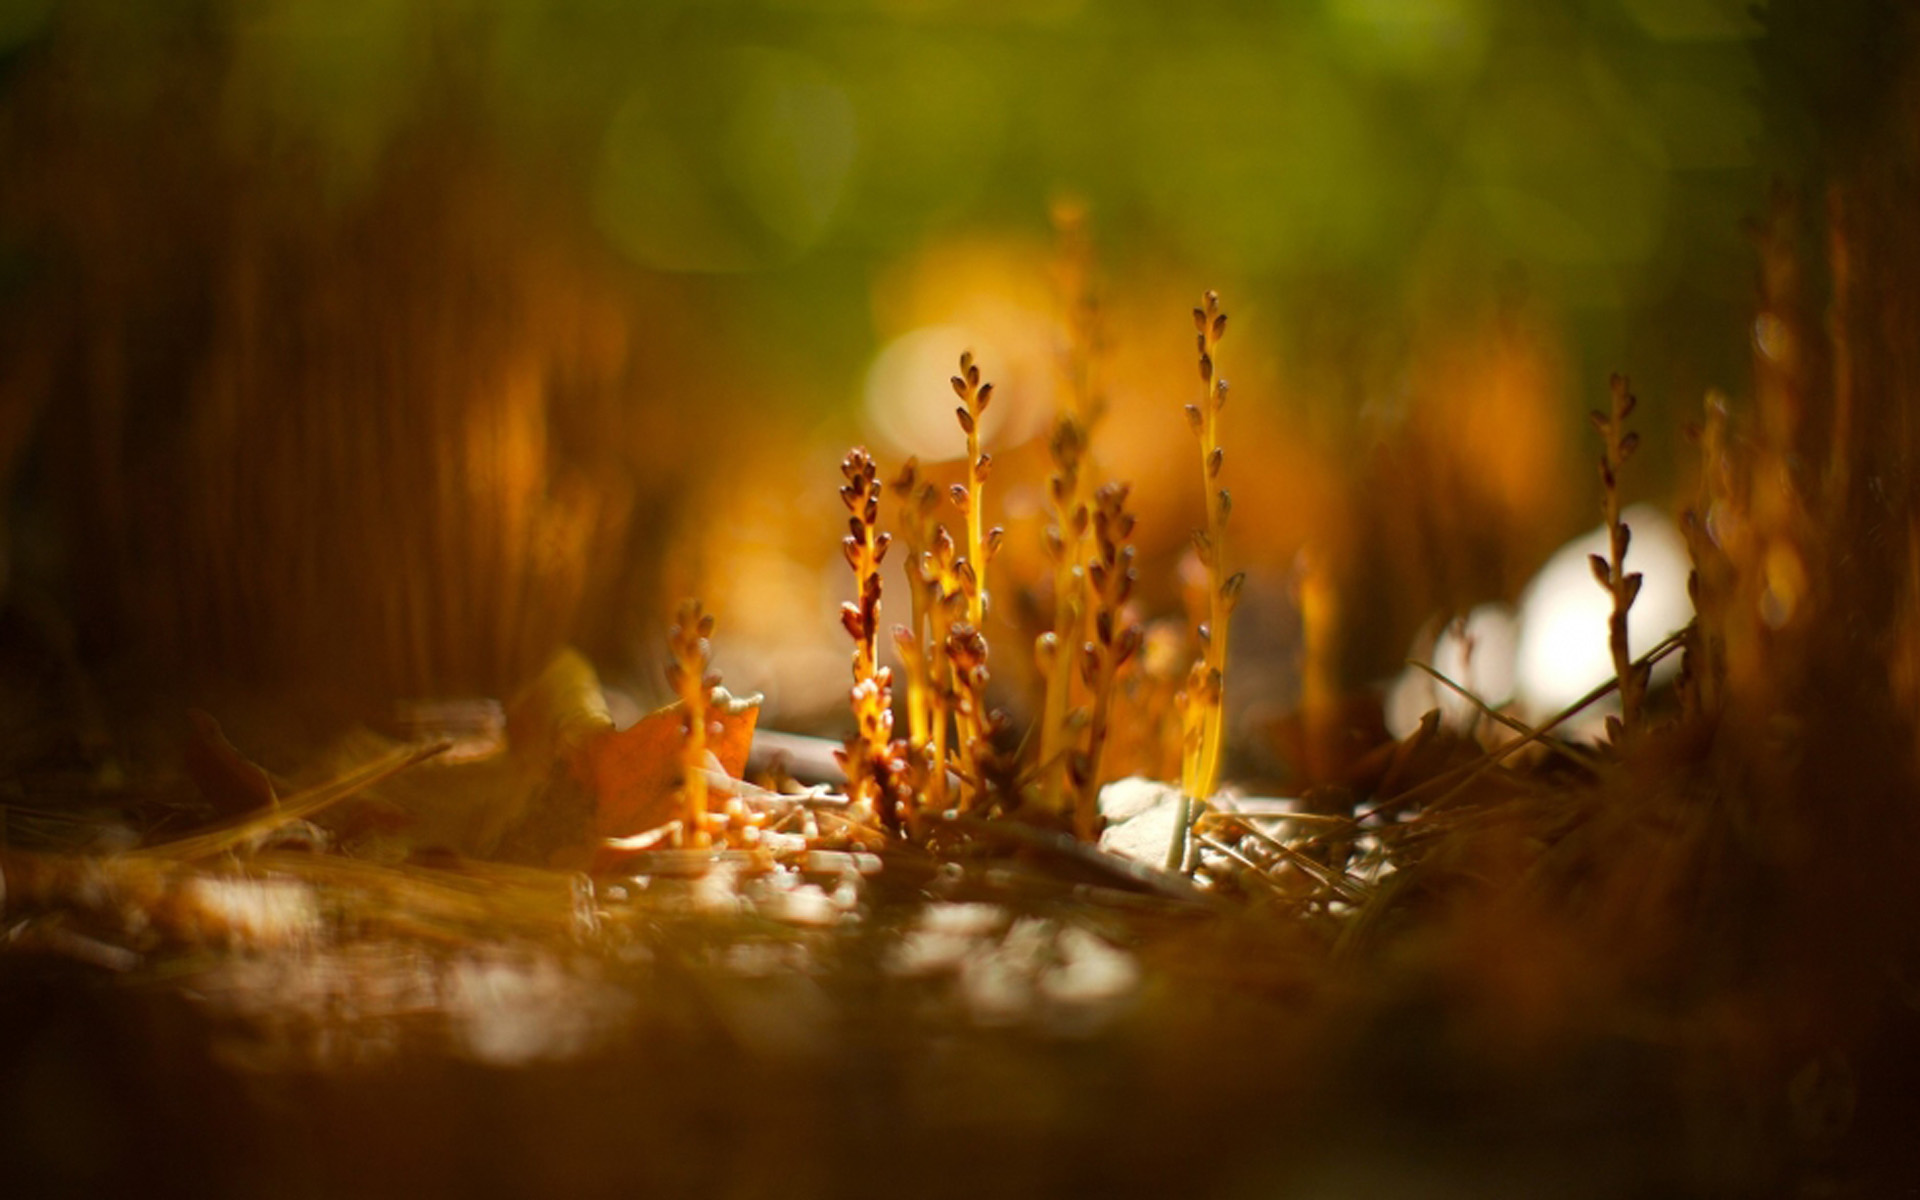 静物唯美意境图片 小清新植物创意光影摄影图片